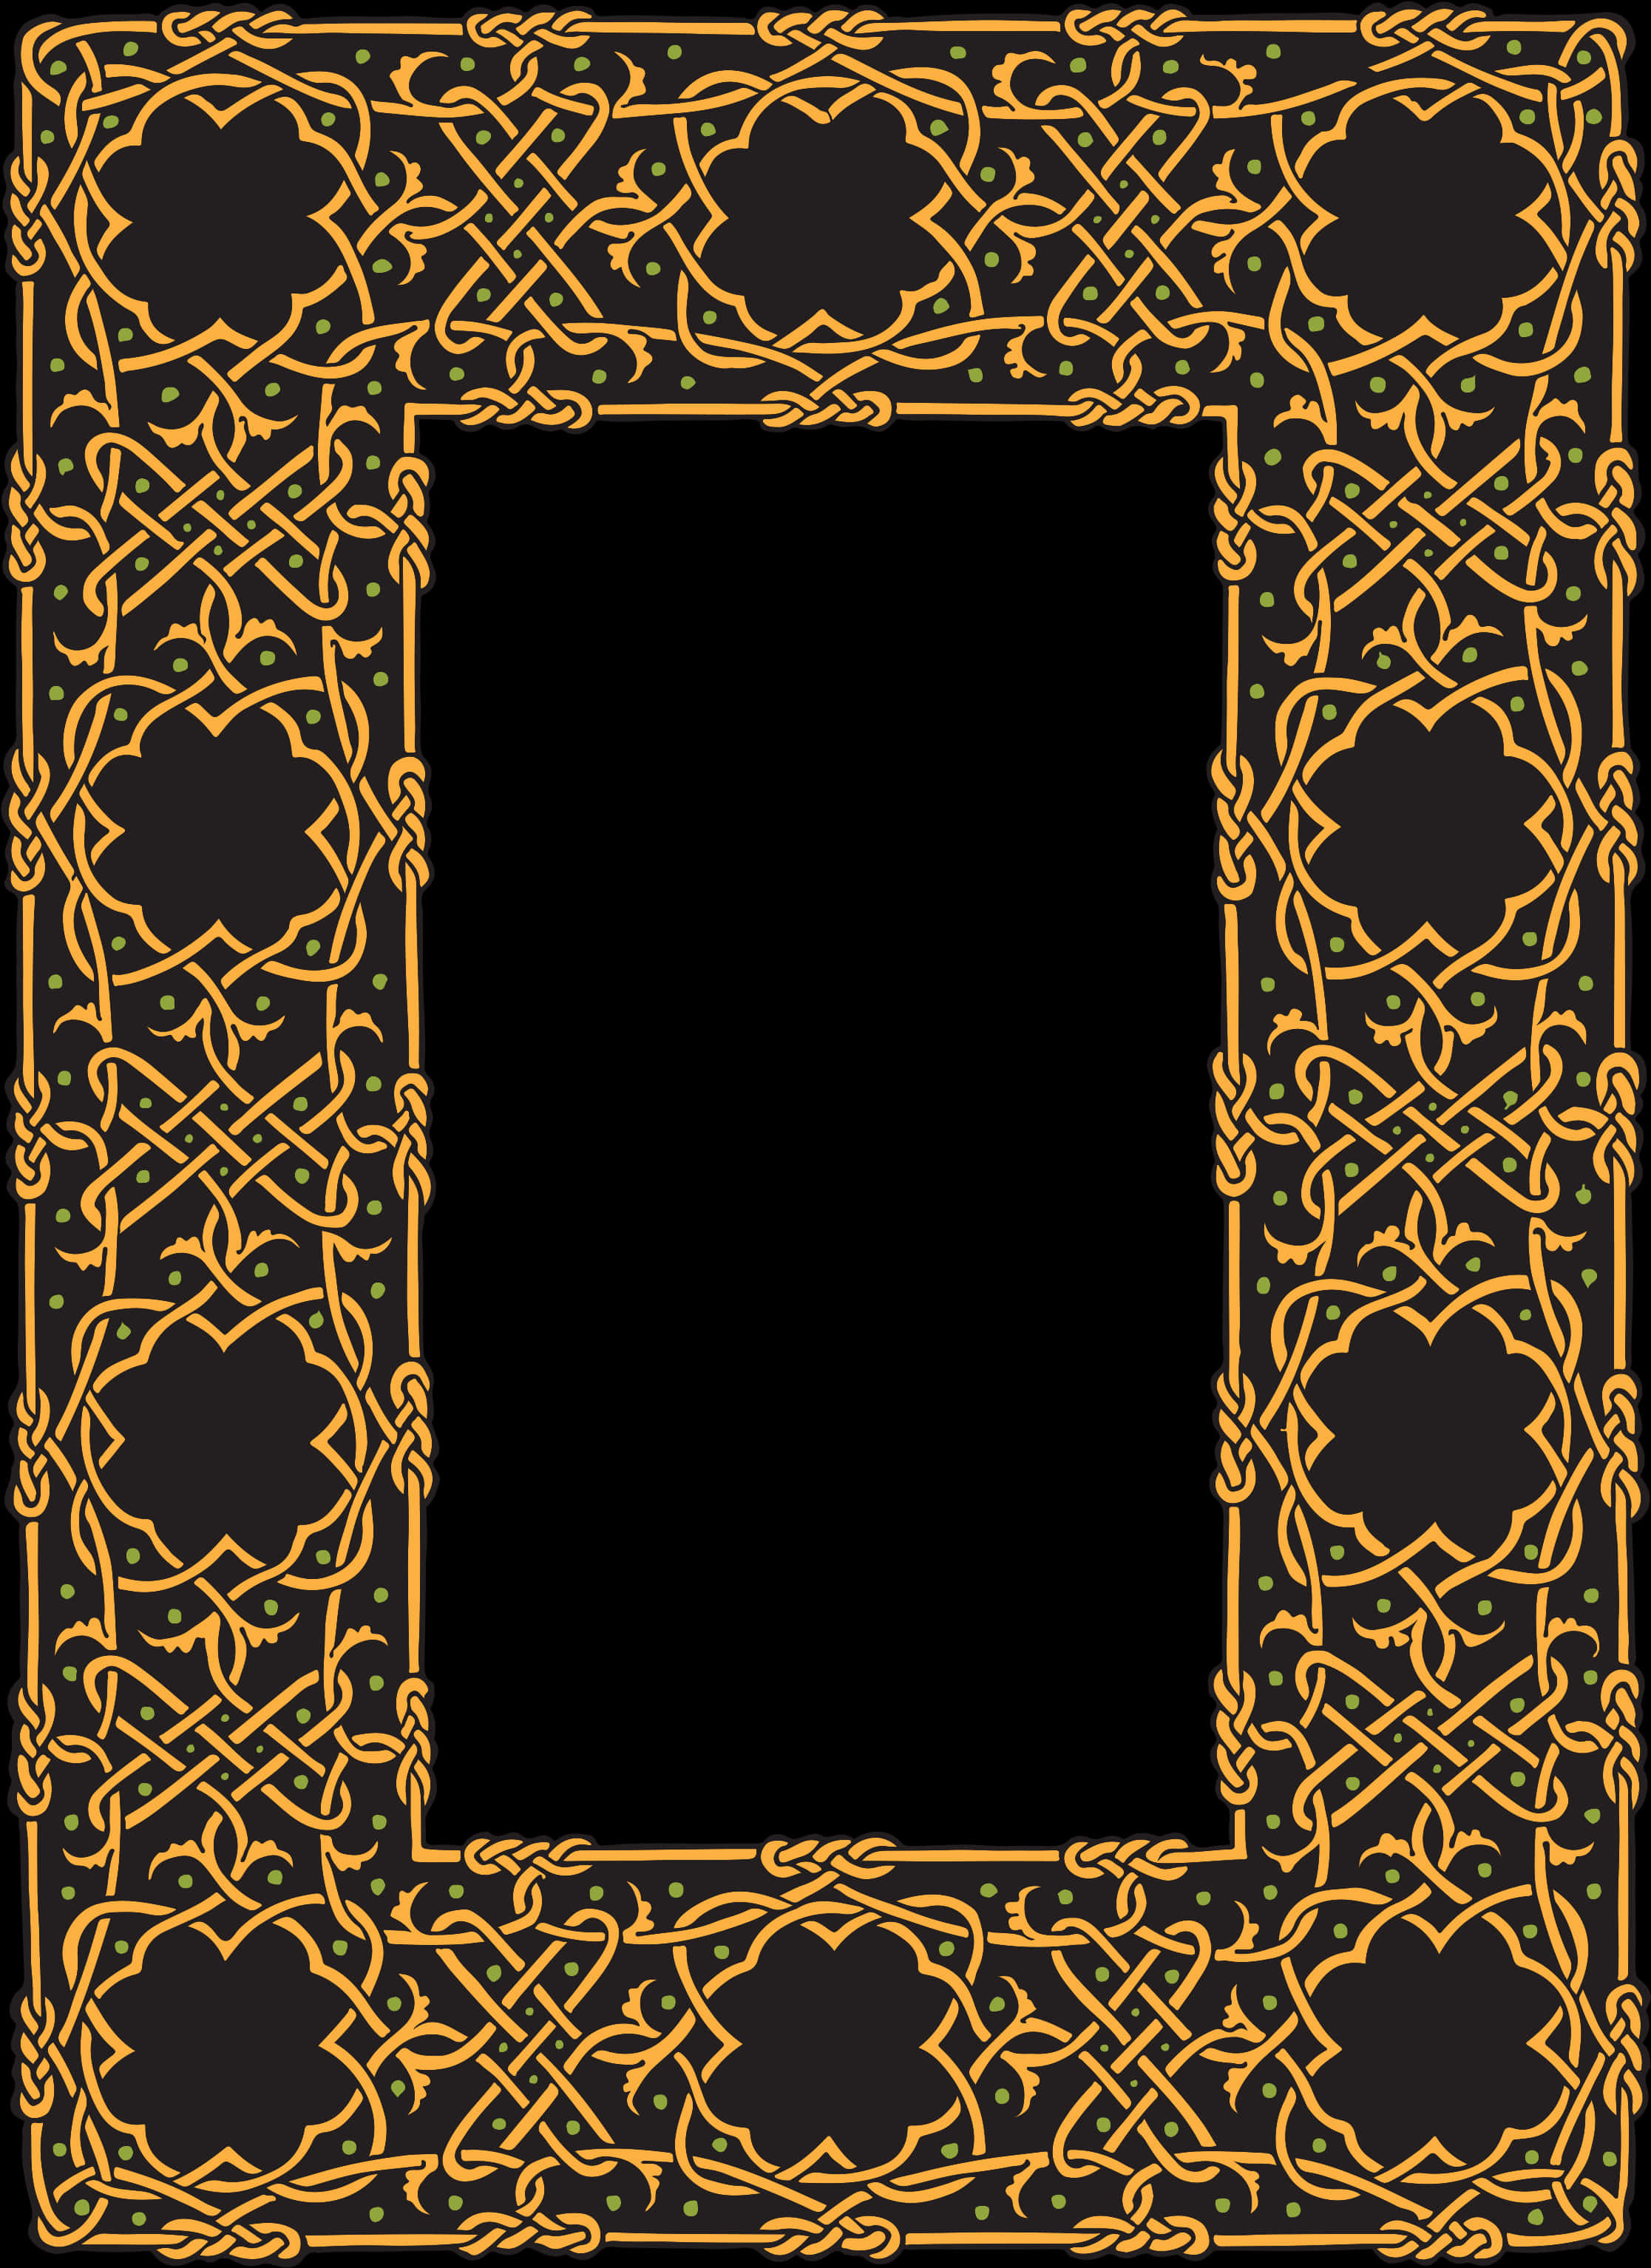 Ornate Golden Celtic Frame